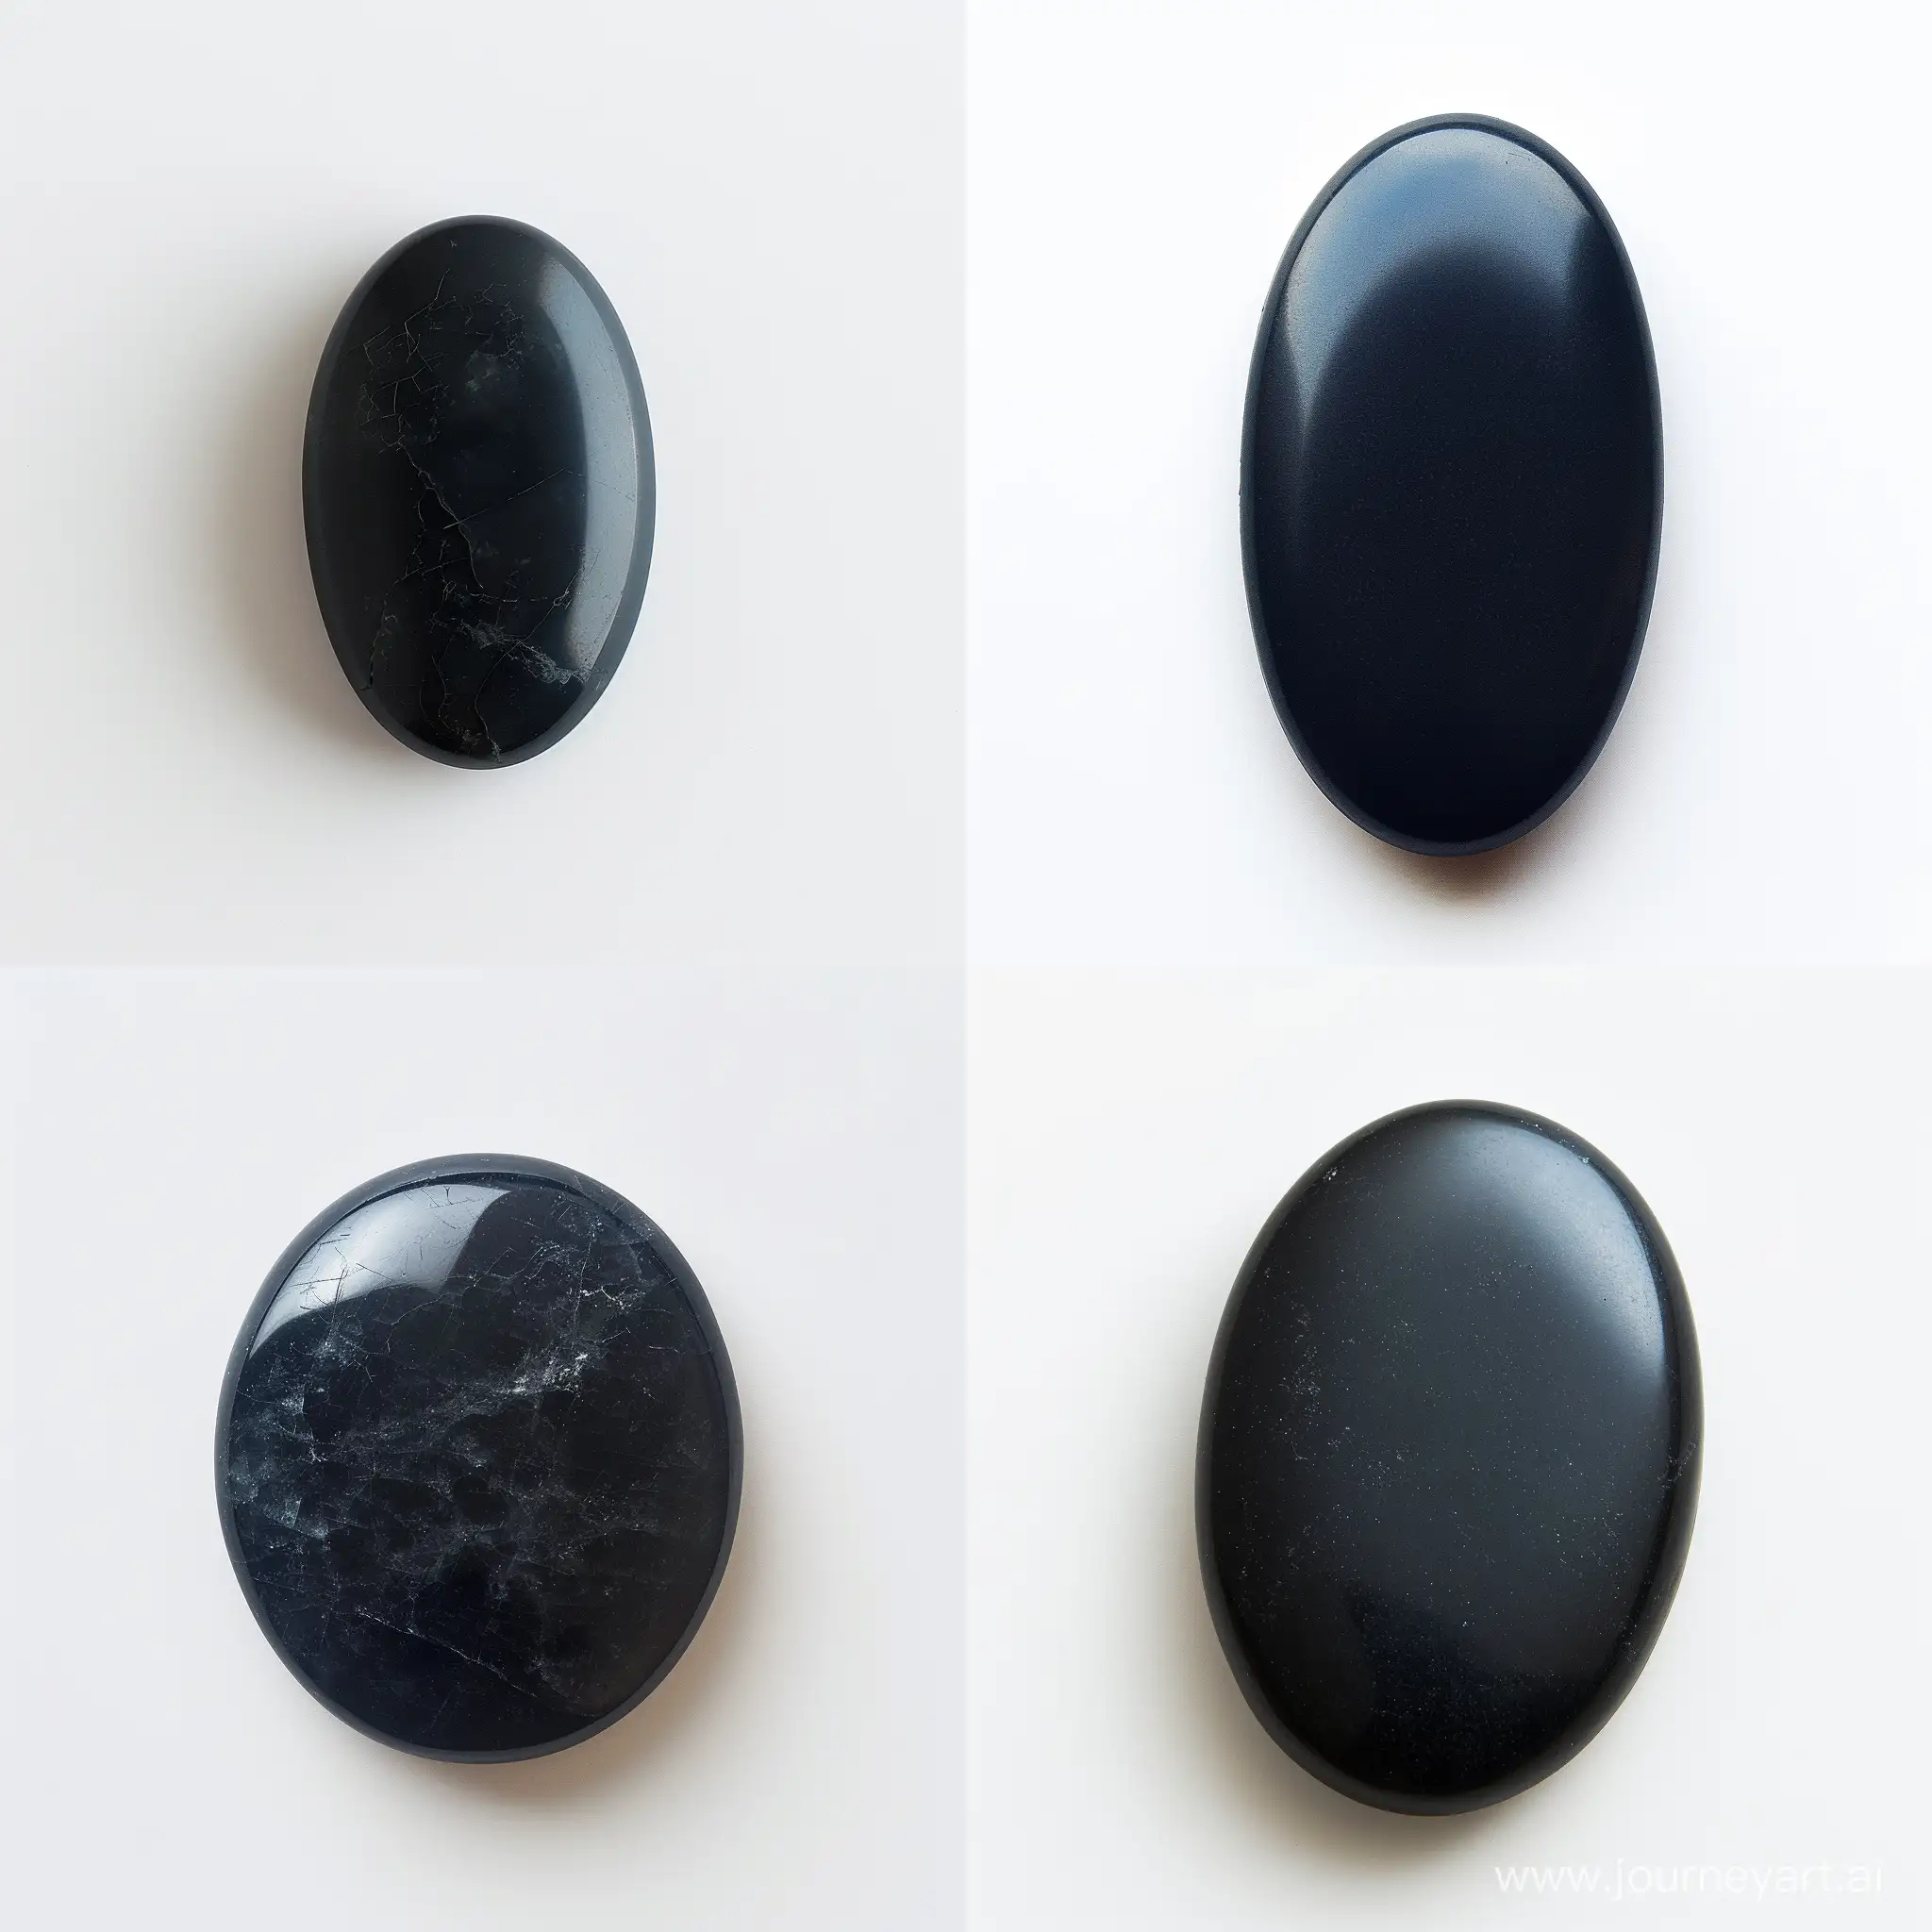 Elegant-Oval-Black-Stone-Cabochon-on-White-Background